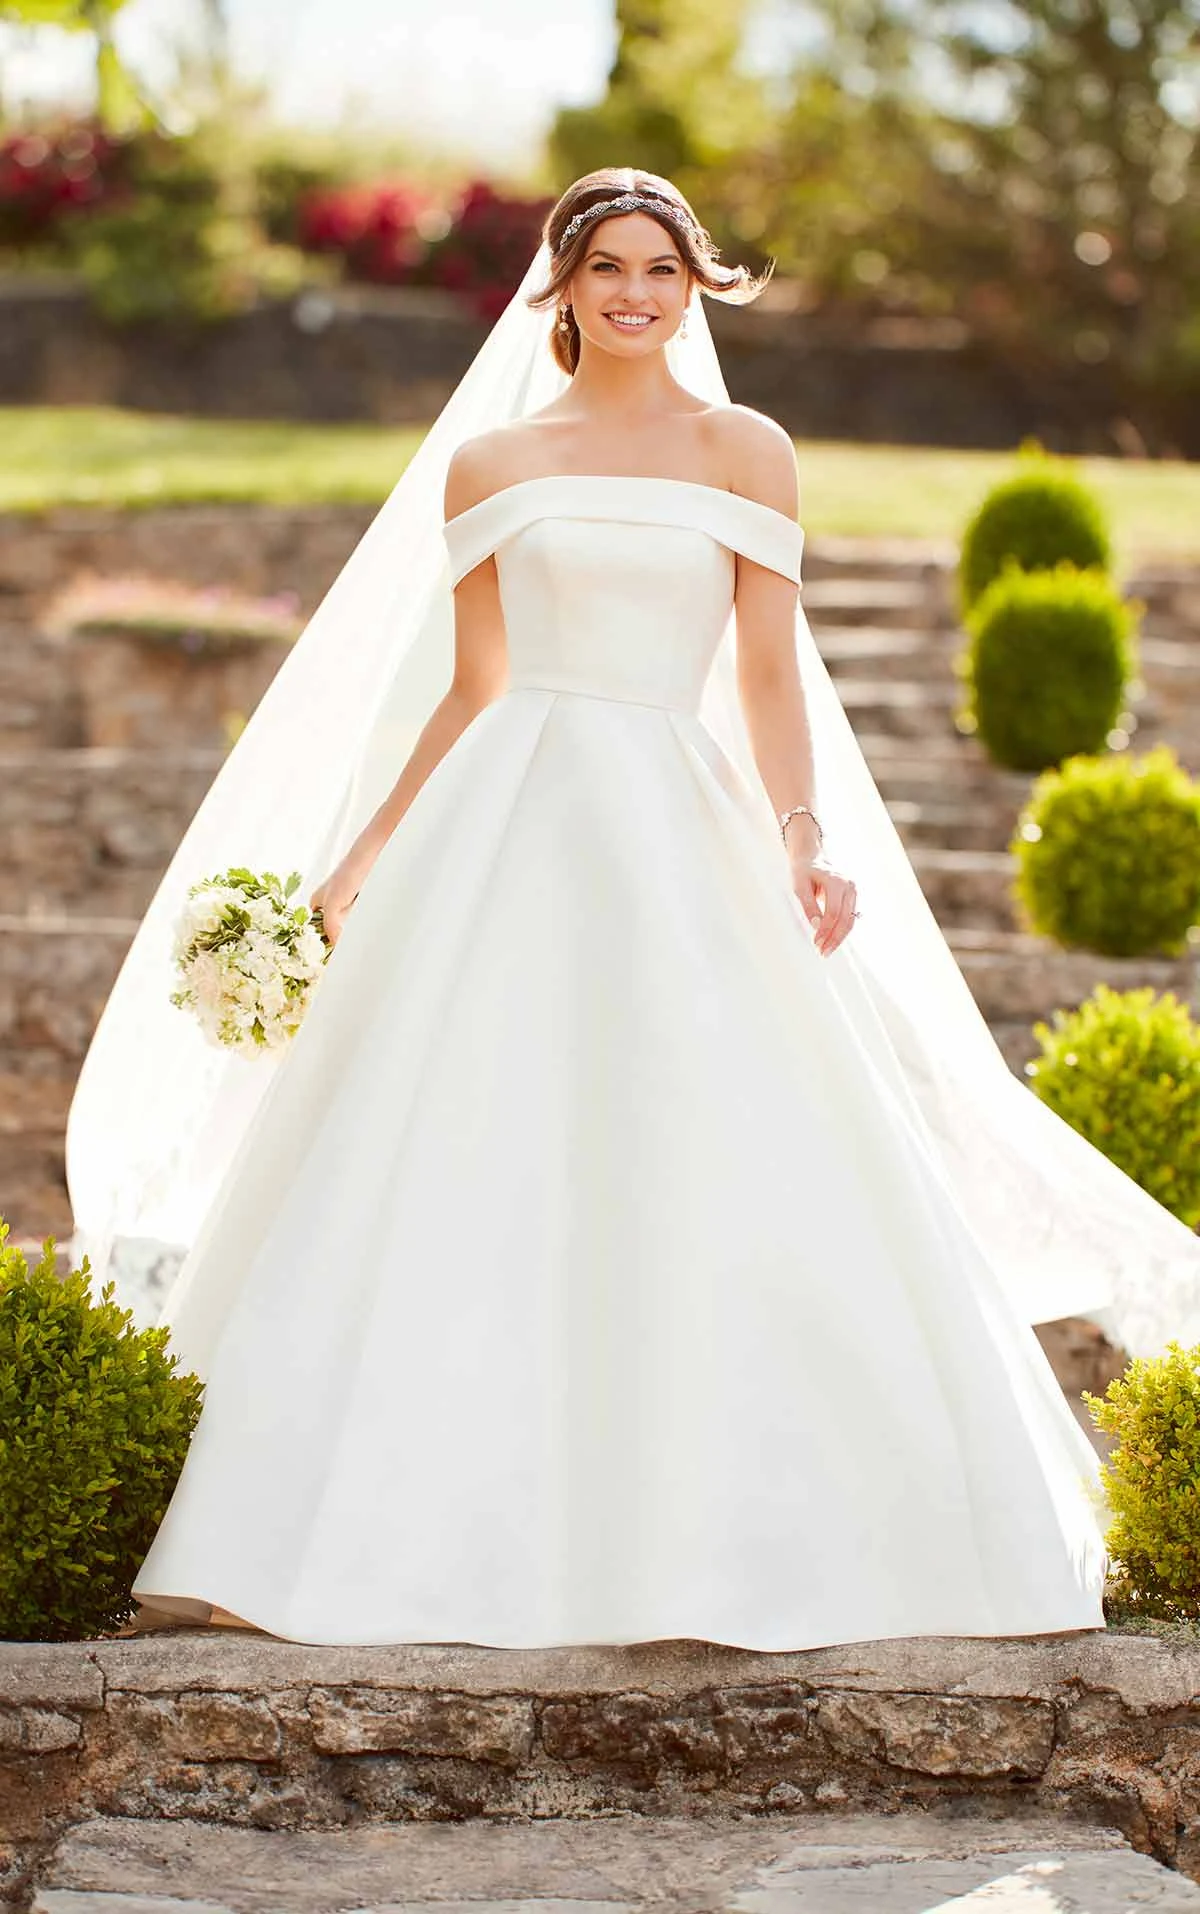 plain ball gown wedding dress